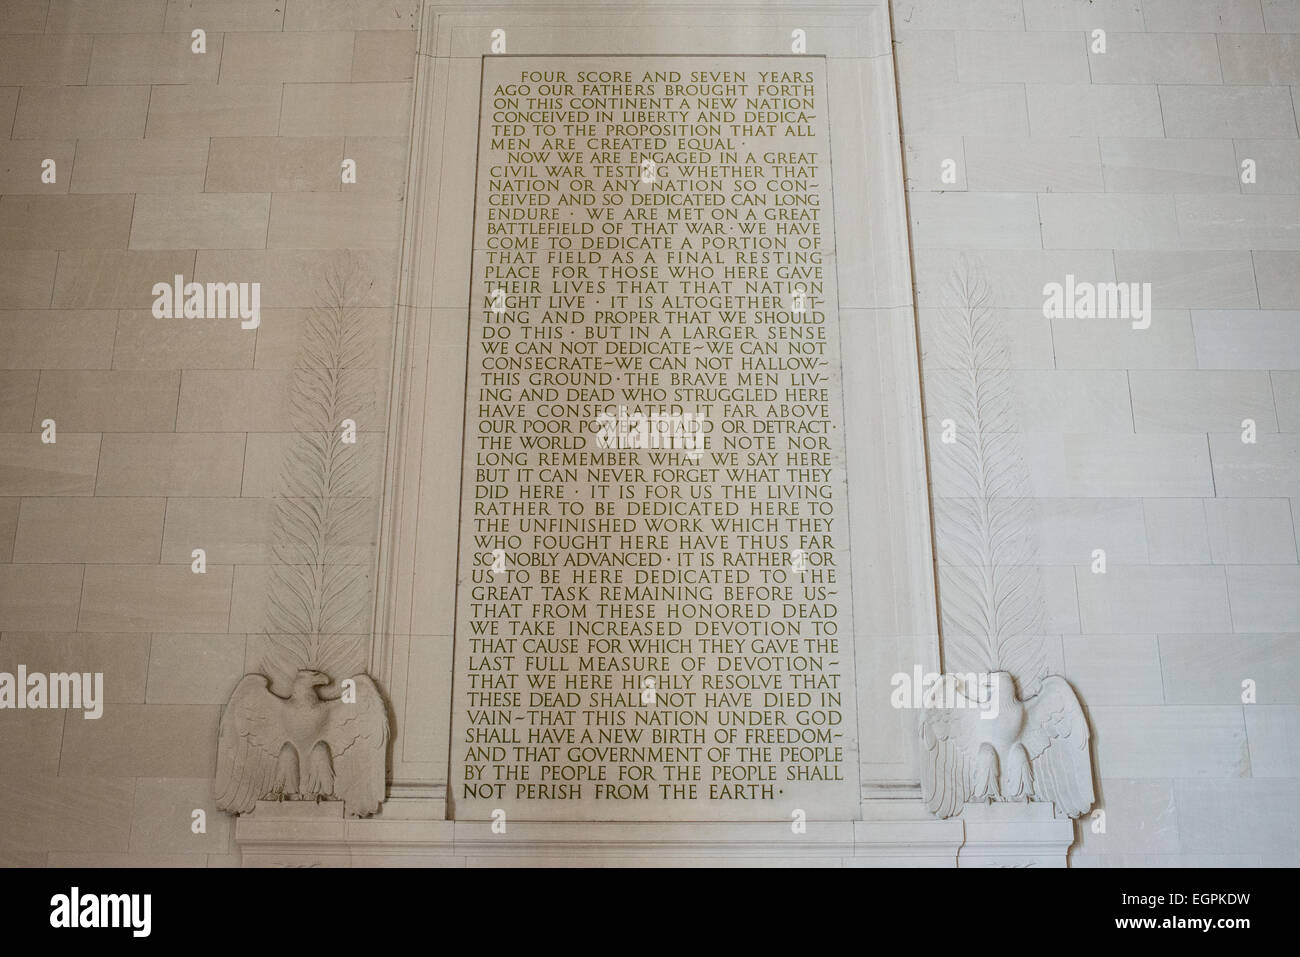 WASHINGTON DC, USA - Der Text der Gettysburg Address in der südlichen Mauer in das Lincoln Memorial in Washington DC geätzt. Stockfoto